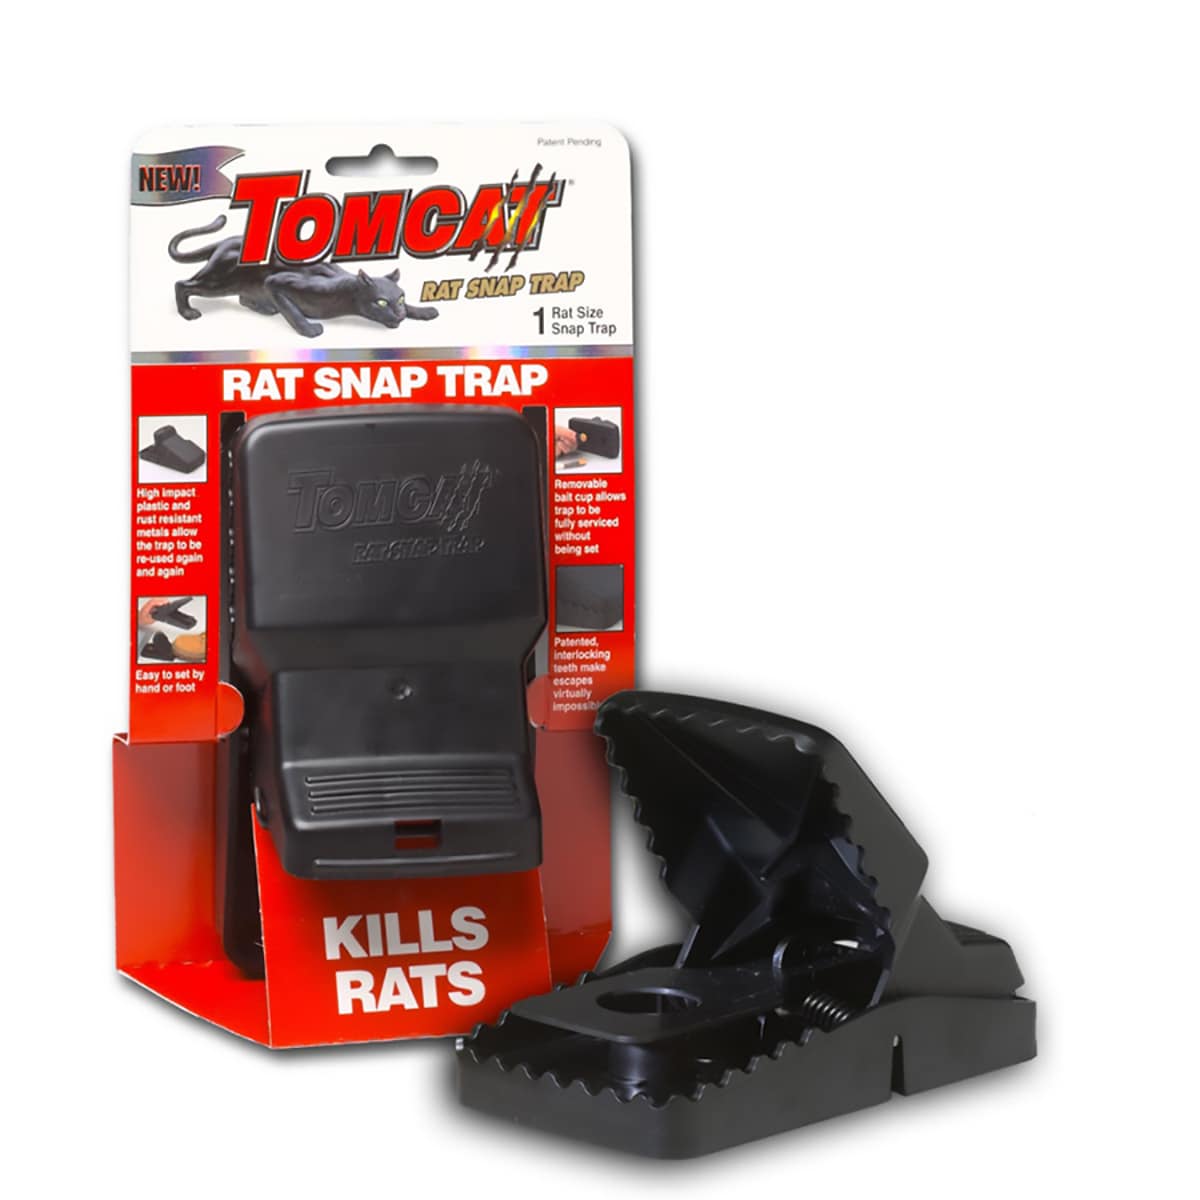 TOMCAT Snap Trap Rat Trap at